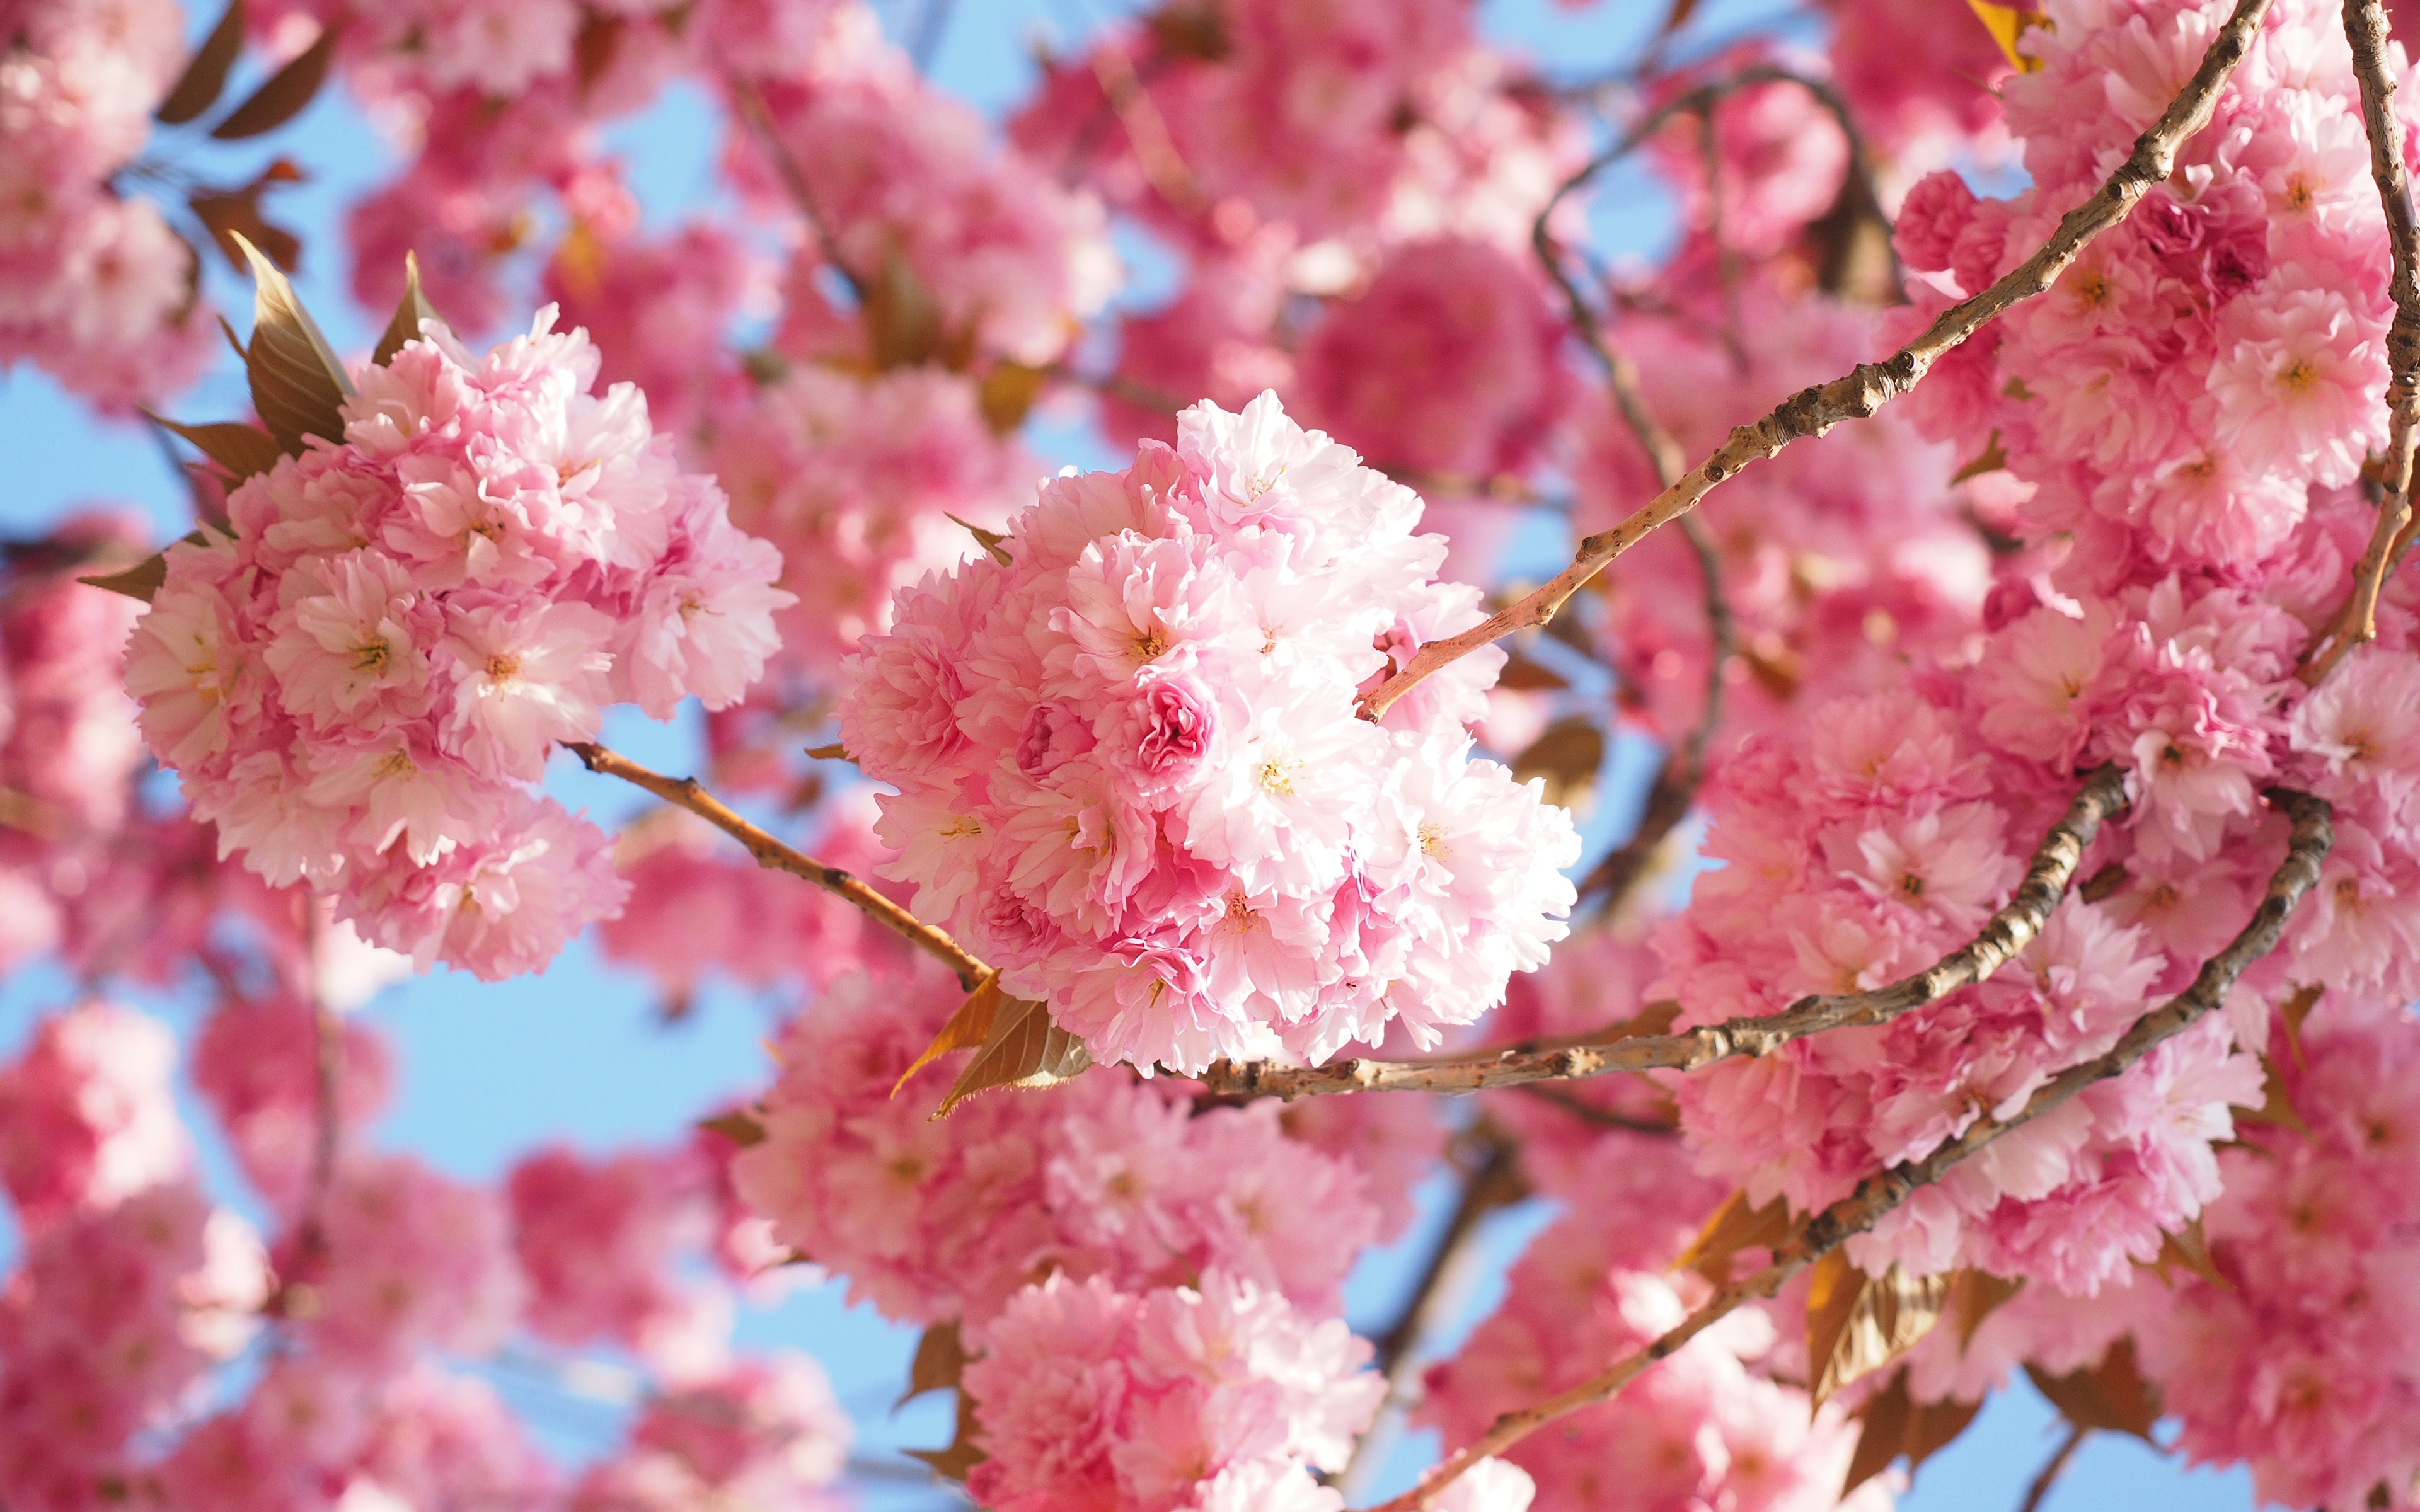 Hoa đào Tết mang lại cảm giác thịnh vượng và sự thịnh vượng cho gia đình bạn. Hãy đón mùa xuân cùng những bông hoa đào đỏ rực, tràn đầy may mắn và tình yêu. Một mùa Tết đầy hạnh phúc và tràn ngập hy vọng đang đến gần.